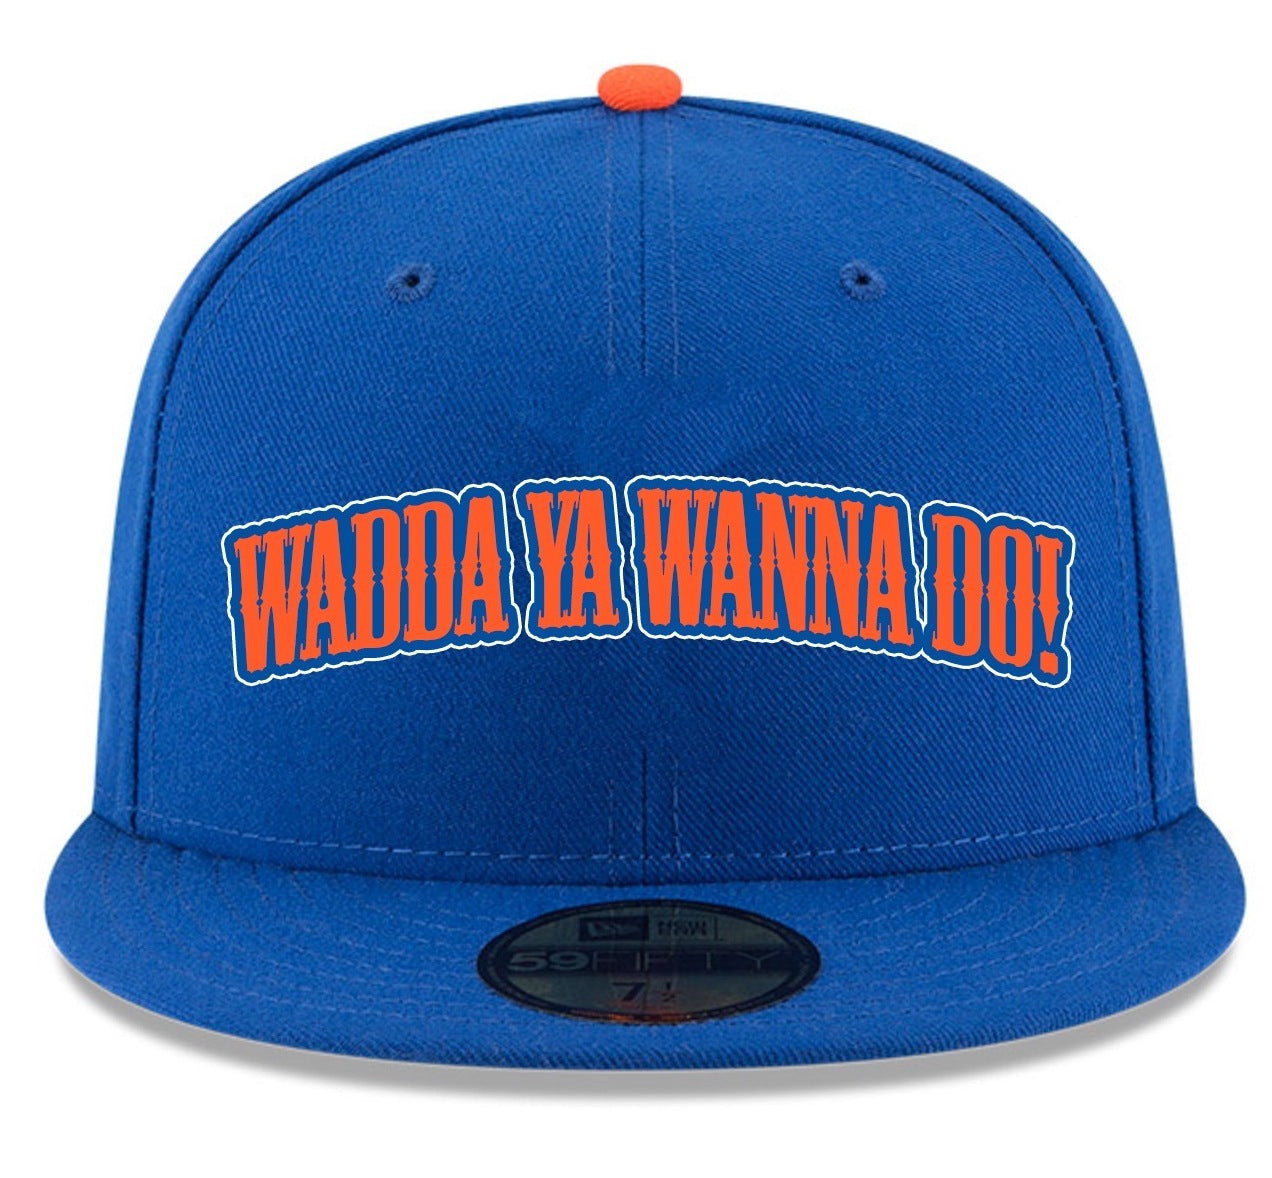 Wadda Ya Wanna Do! NY Knicks & Mets Edition Snapback Hat